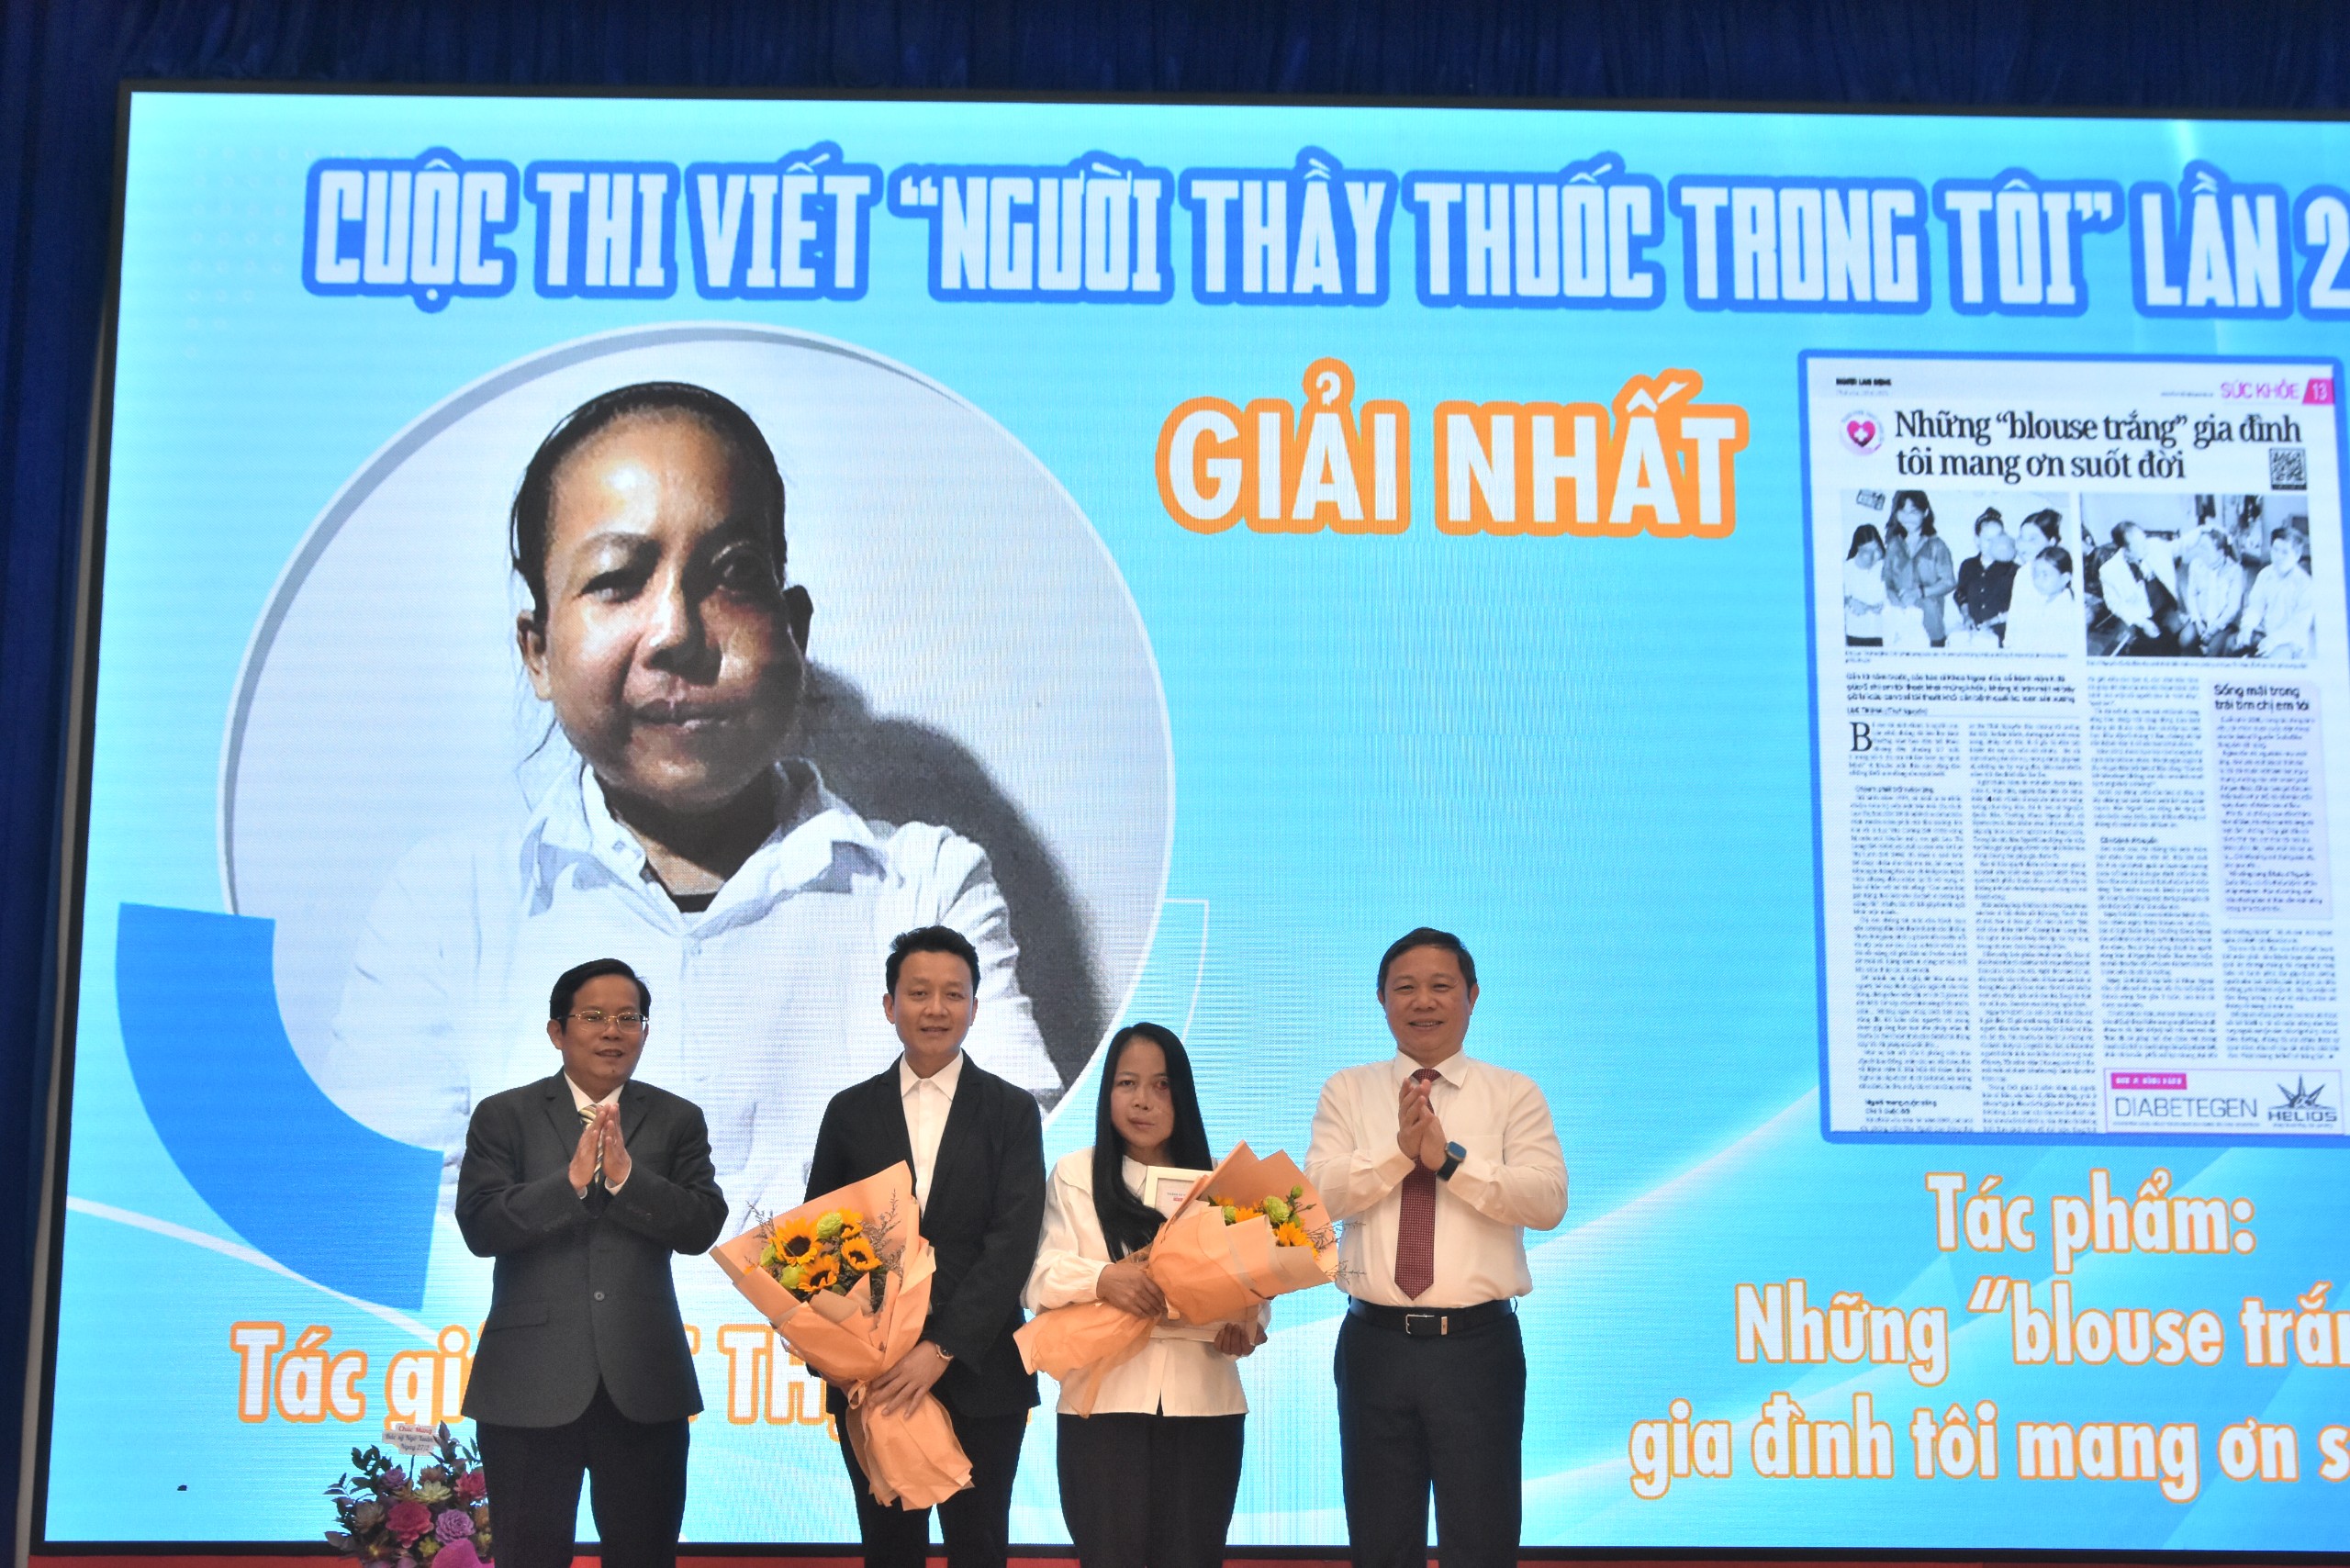 Phóng viên Báo Dân Việt đoạt giải cuộc thi viết "Người Thầy thuốc trong tôi"- Ảnh 2.